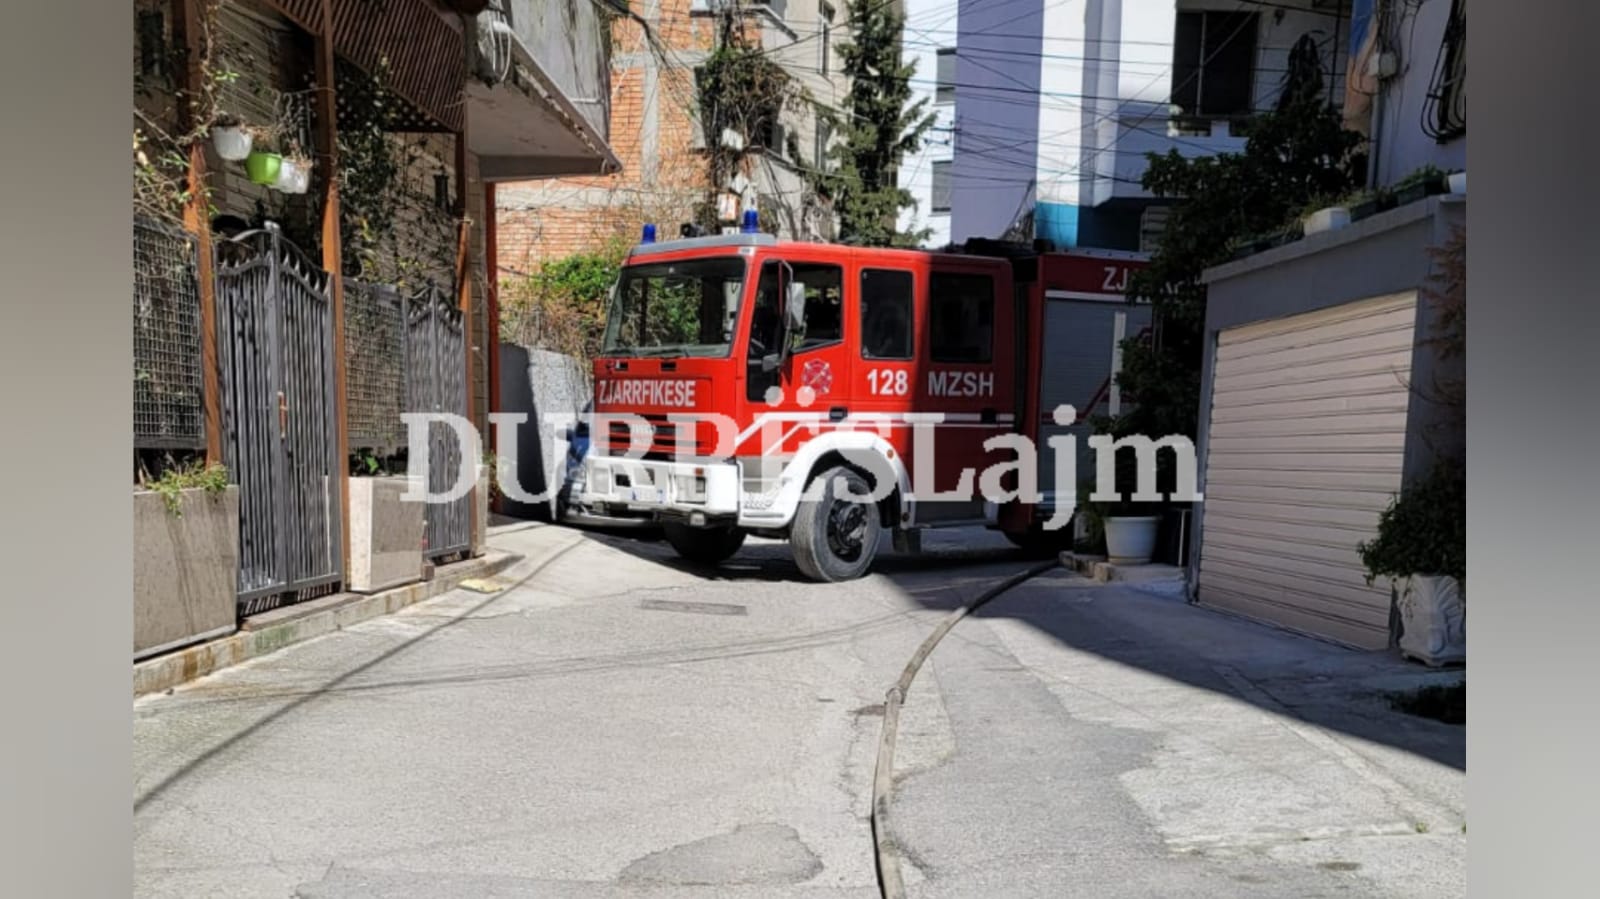 FOTOLAJM/ Durrës, kur ndërhyrja në kohë e zjarrfikëses penalizohet nga moria e ndërtimeve